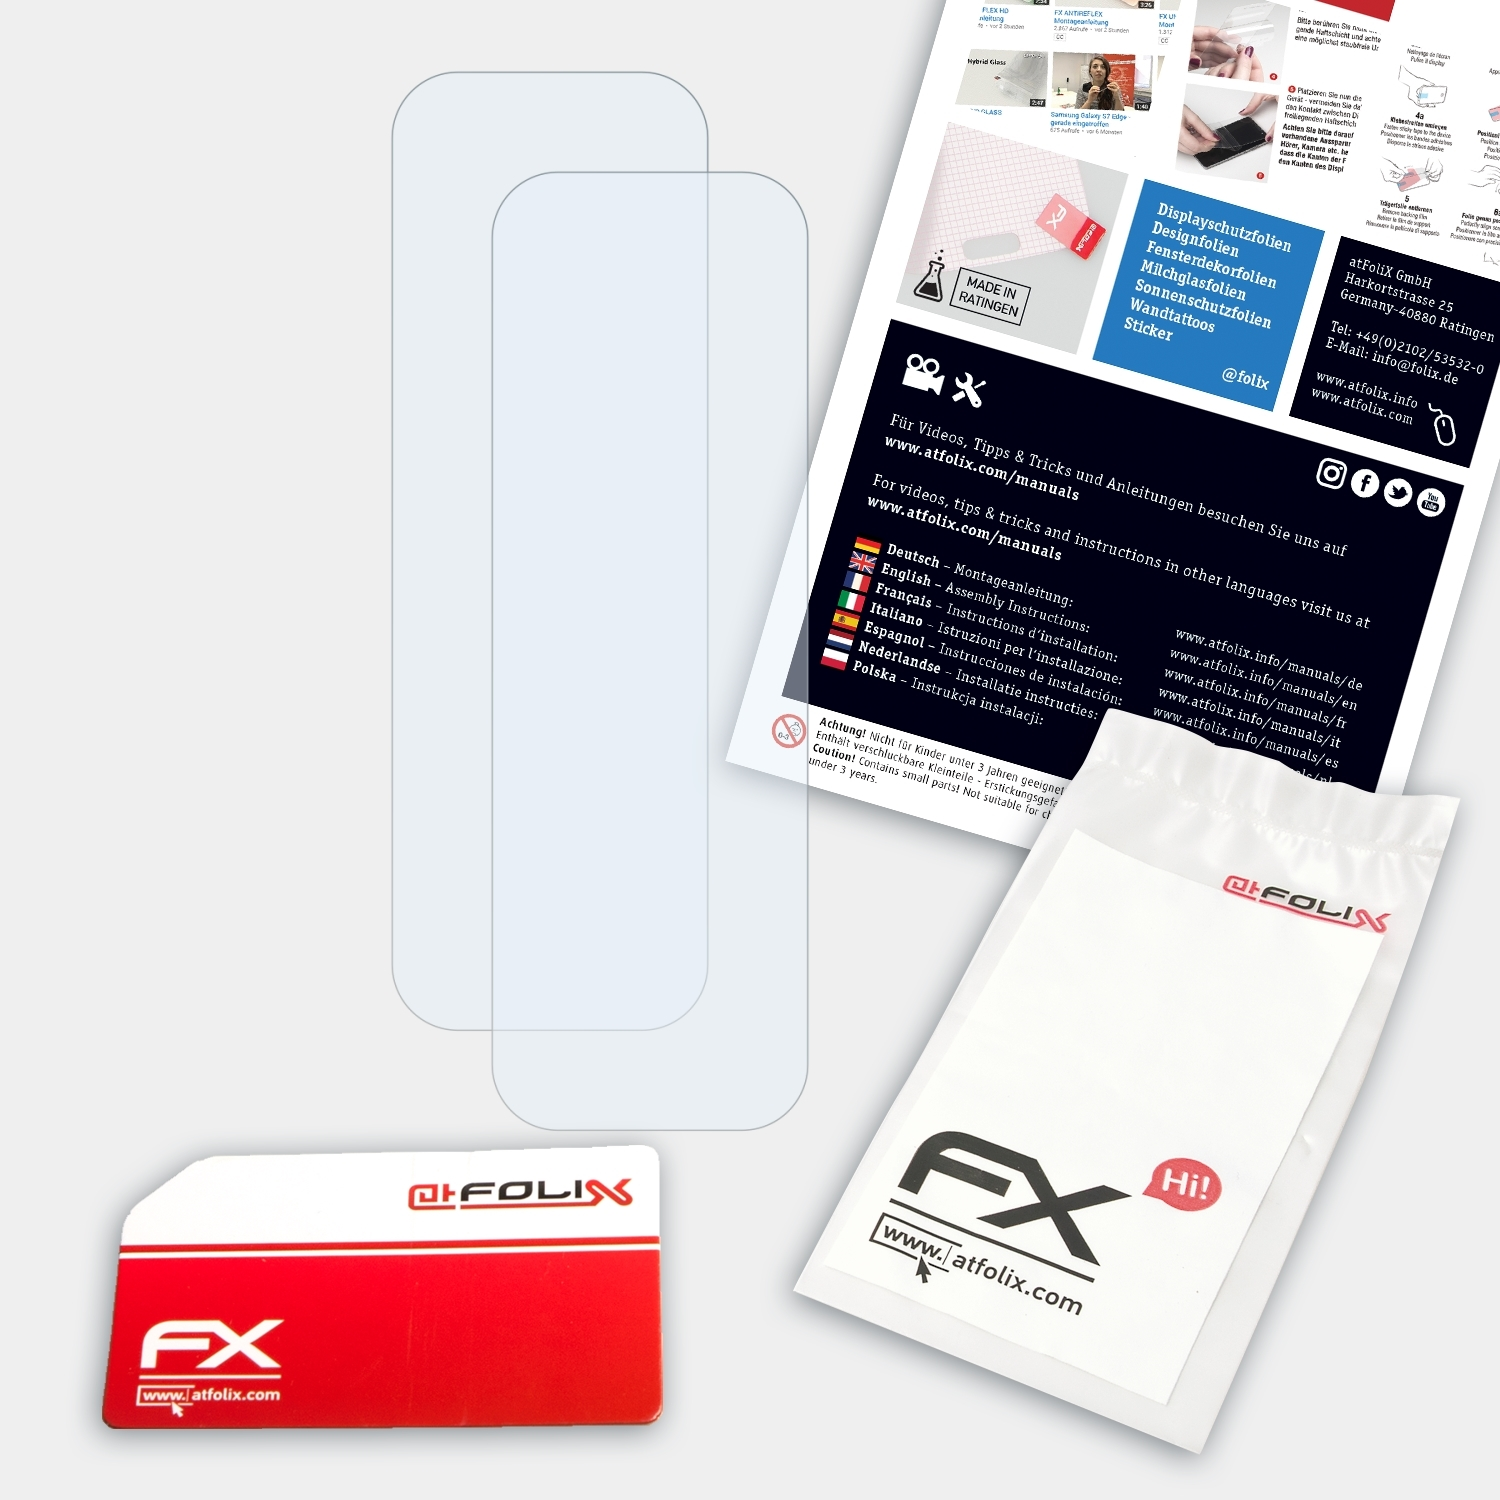 FX-Clear 101) 2x Ehpro ATFOLIX Mod Displayschutz(für